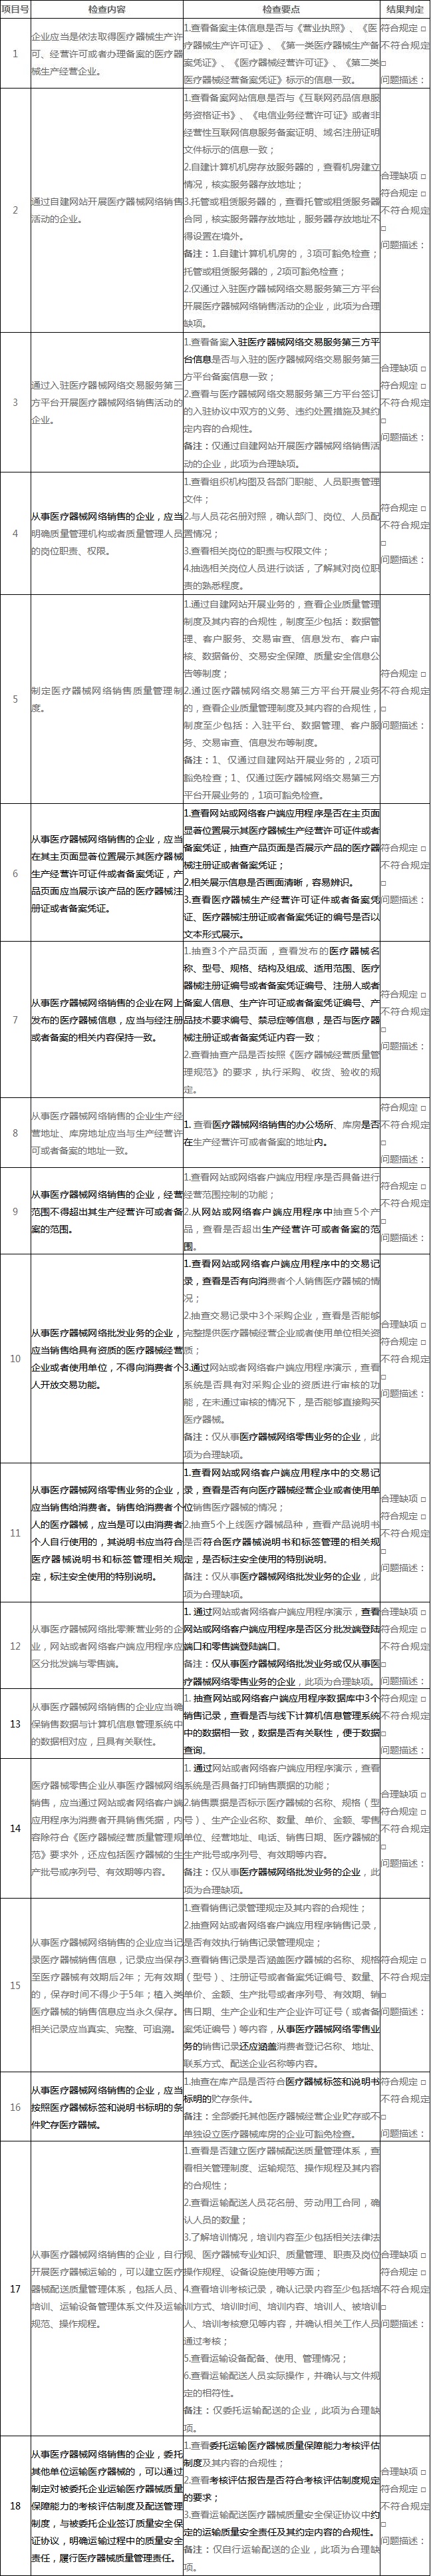 附件2：北京市医疗器械网络销售现场检查评定细则.jpg